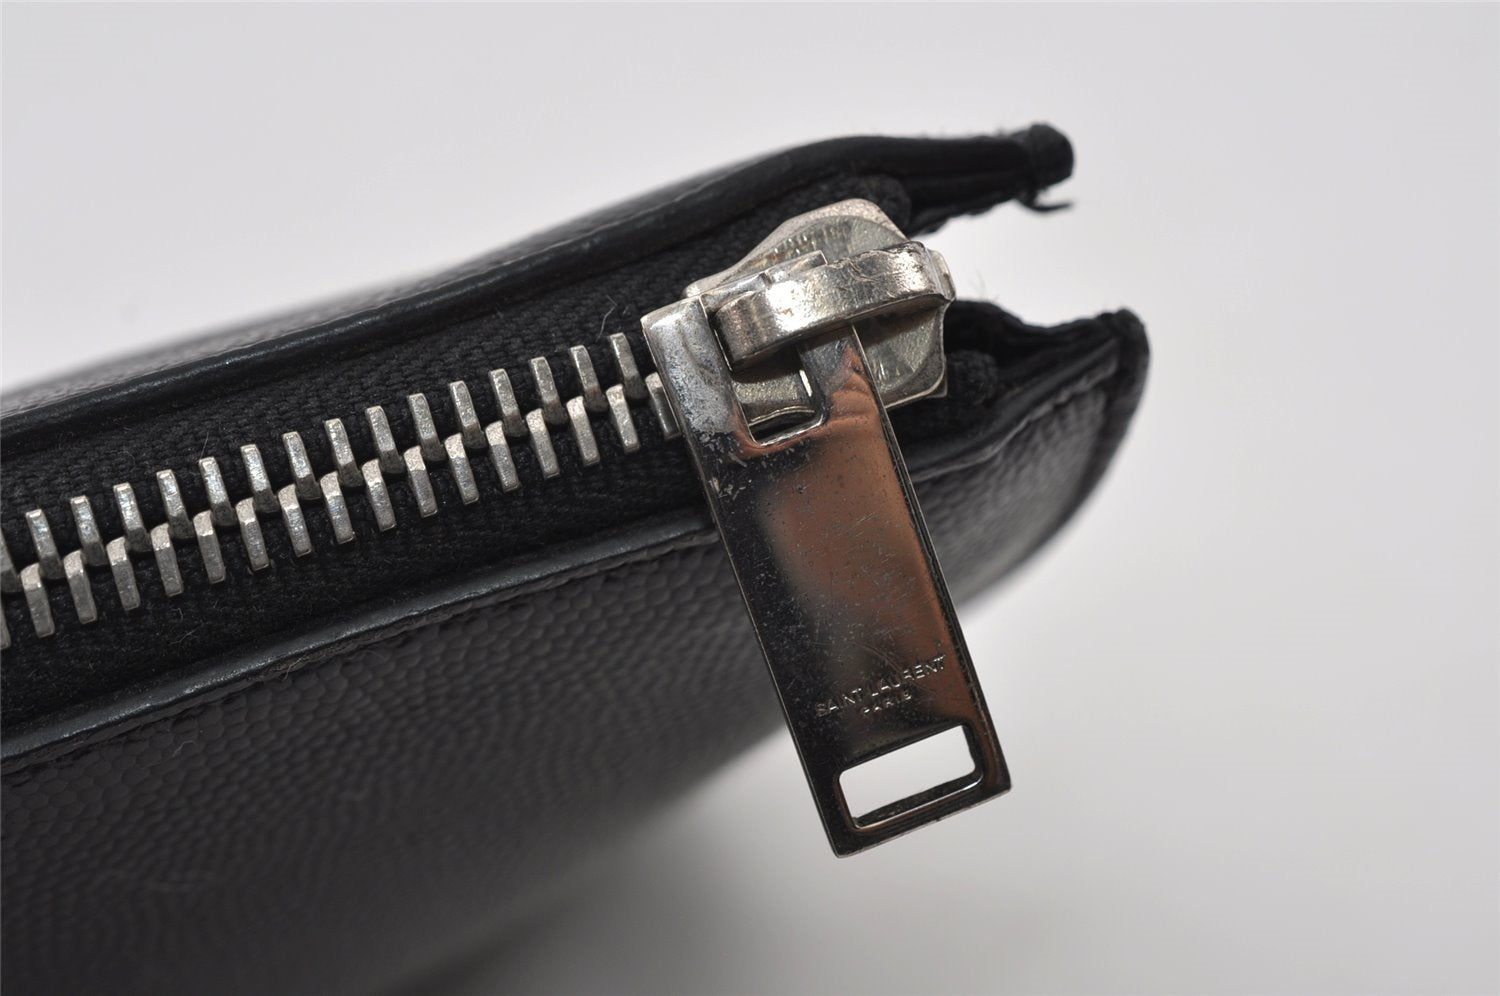 Authentic SAINT LAURENT Clutch Hand Bag Purse Leather TGR397294 Black 4650I